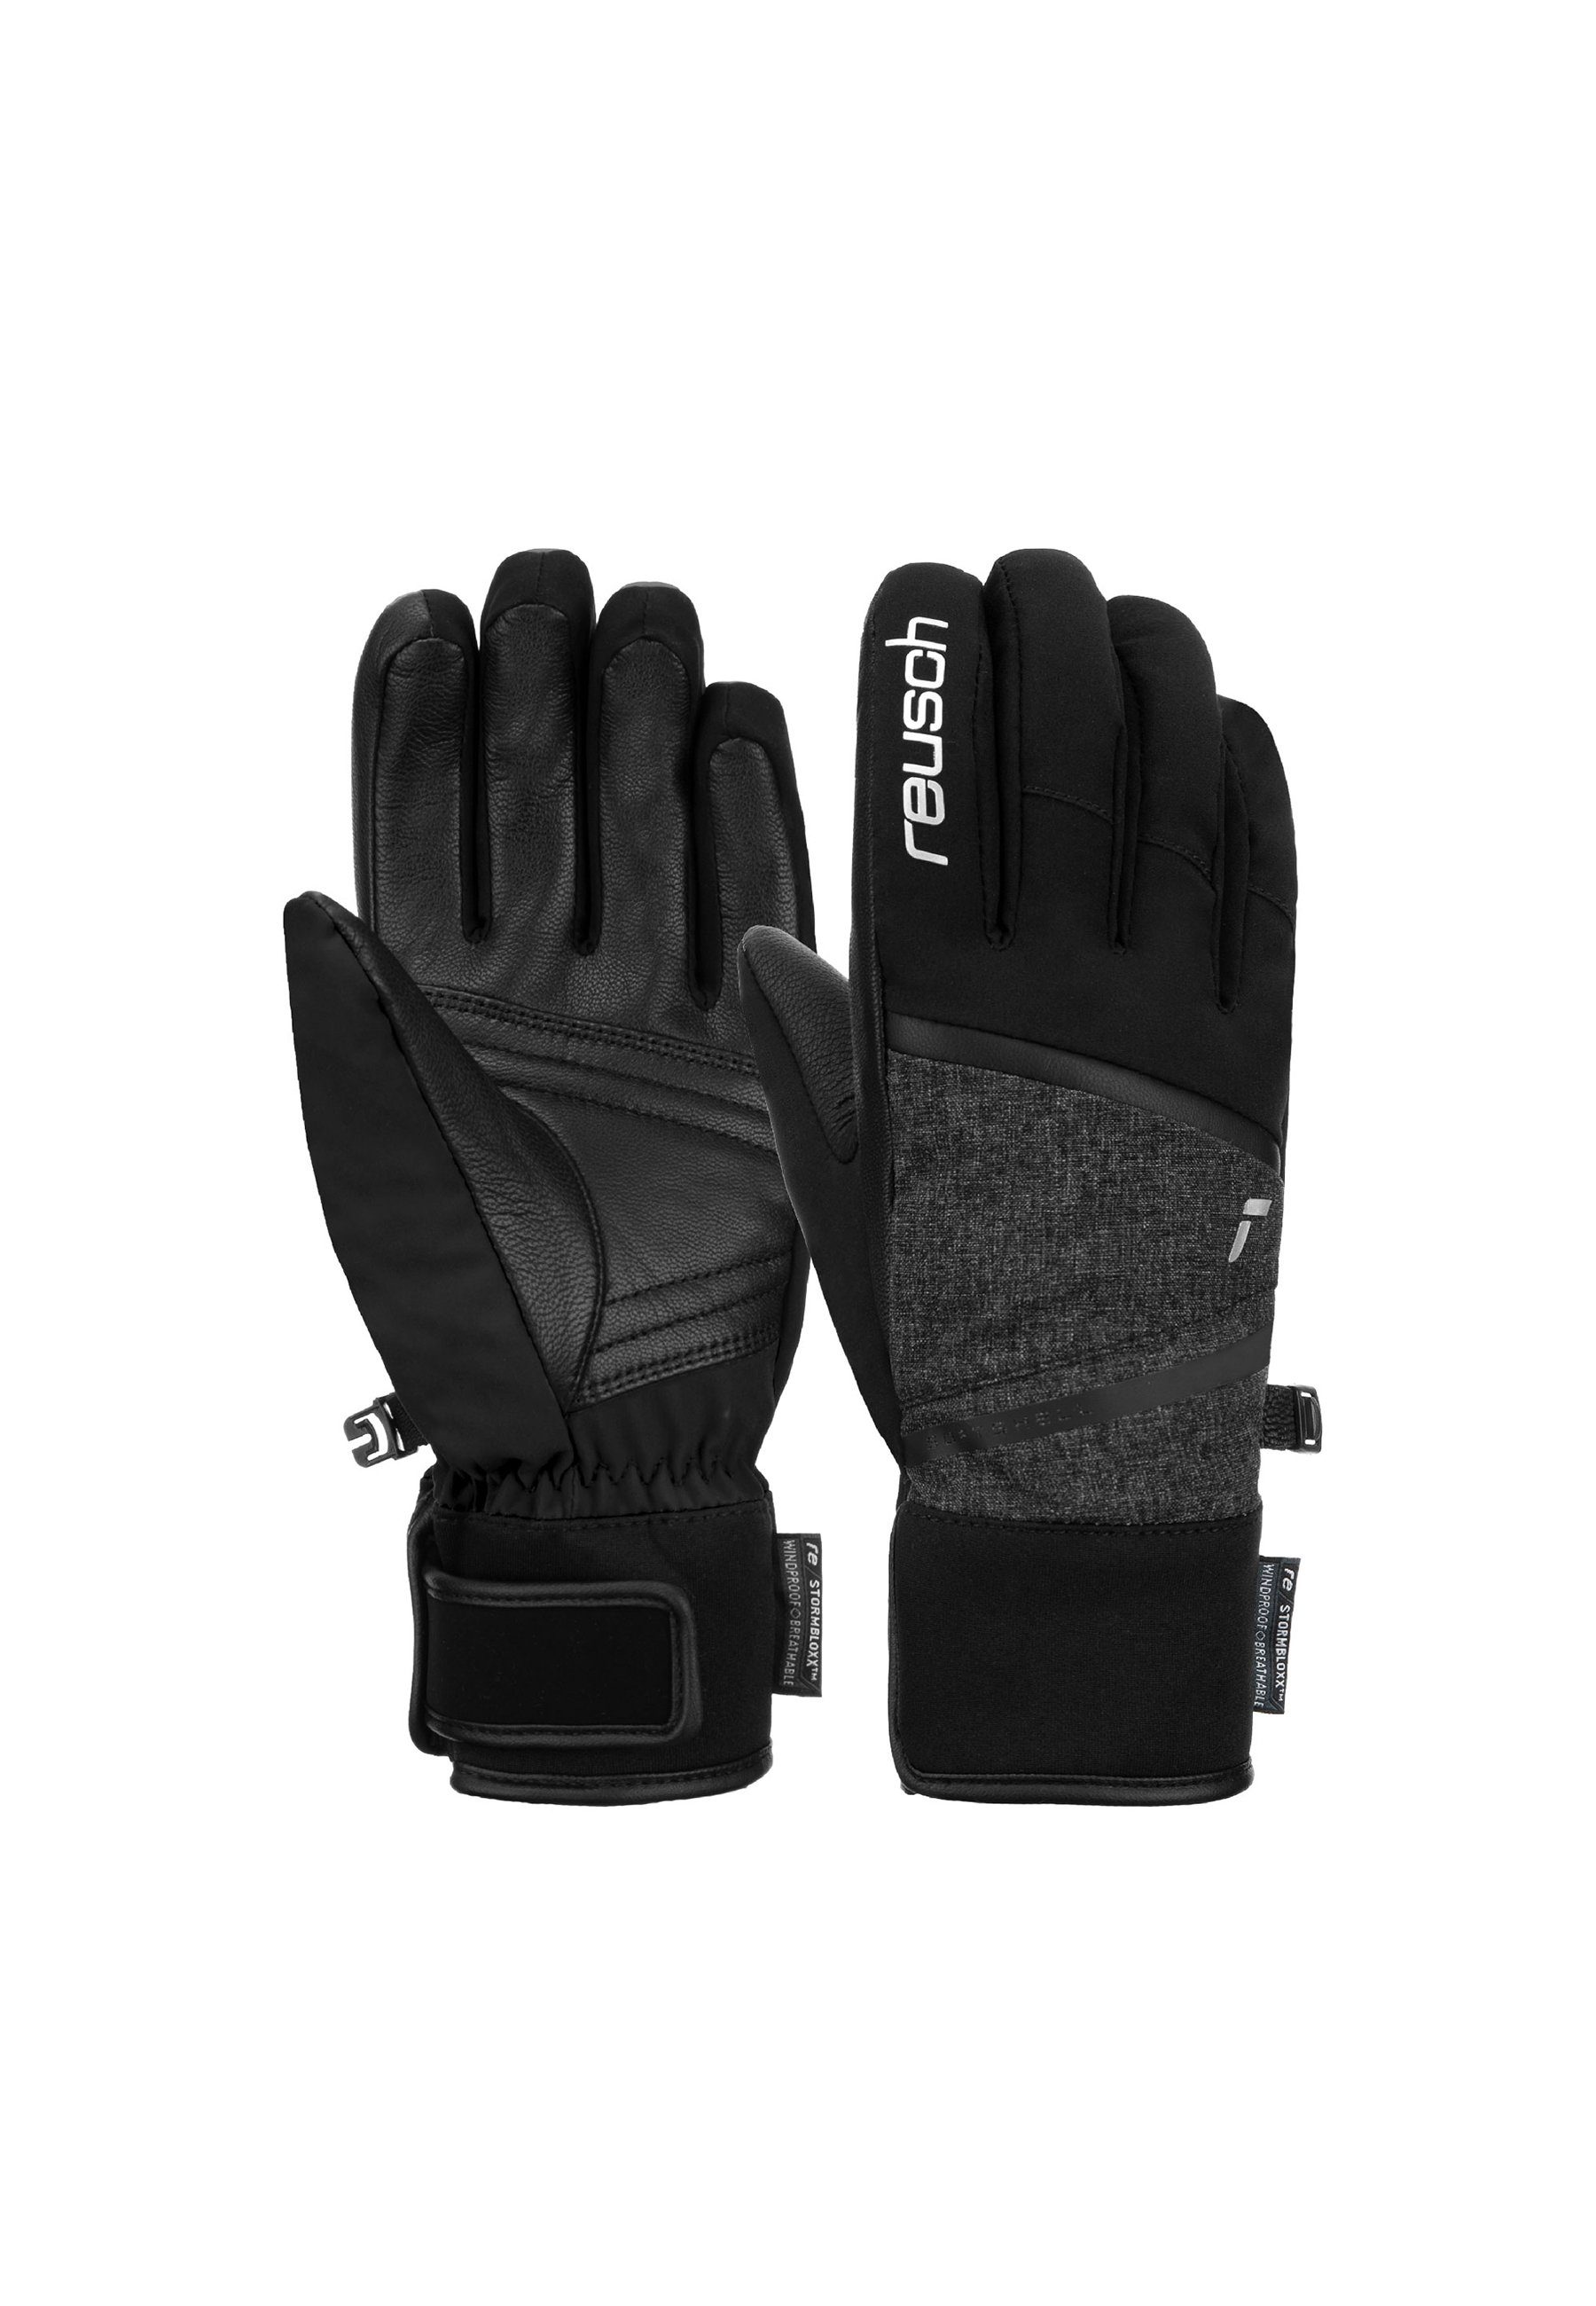 Reusch Skihandschuhe Tessa STORMBLOXX™ aus wasserdichtem und atmungsaktivem Material grau-schwarz | Handschuhe